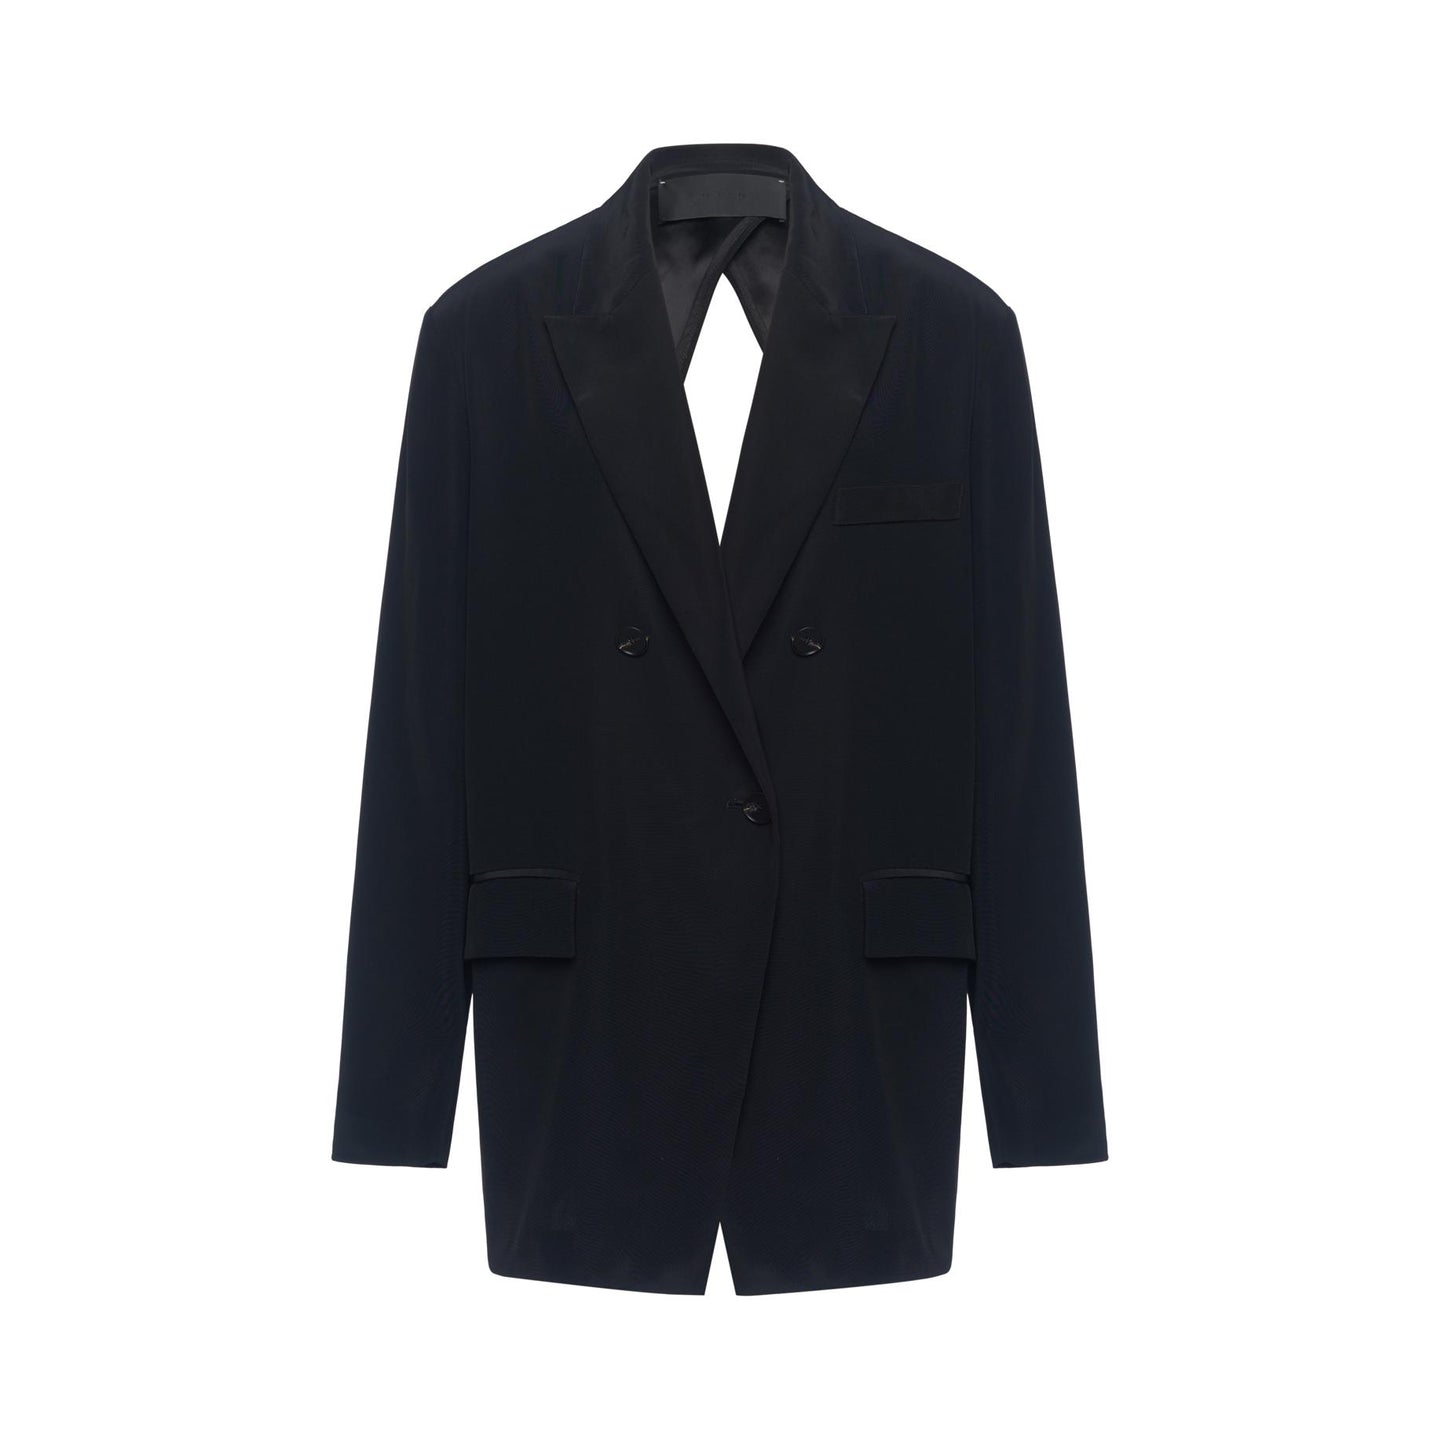 ANAISEY Back-Slit Suit Jacket